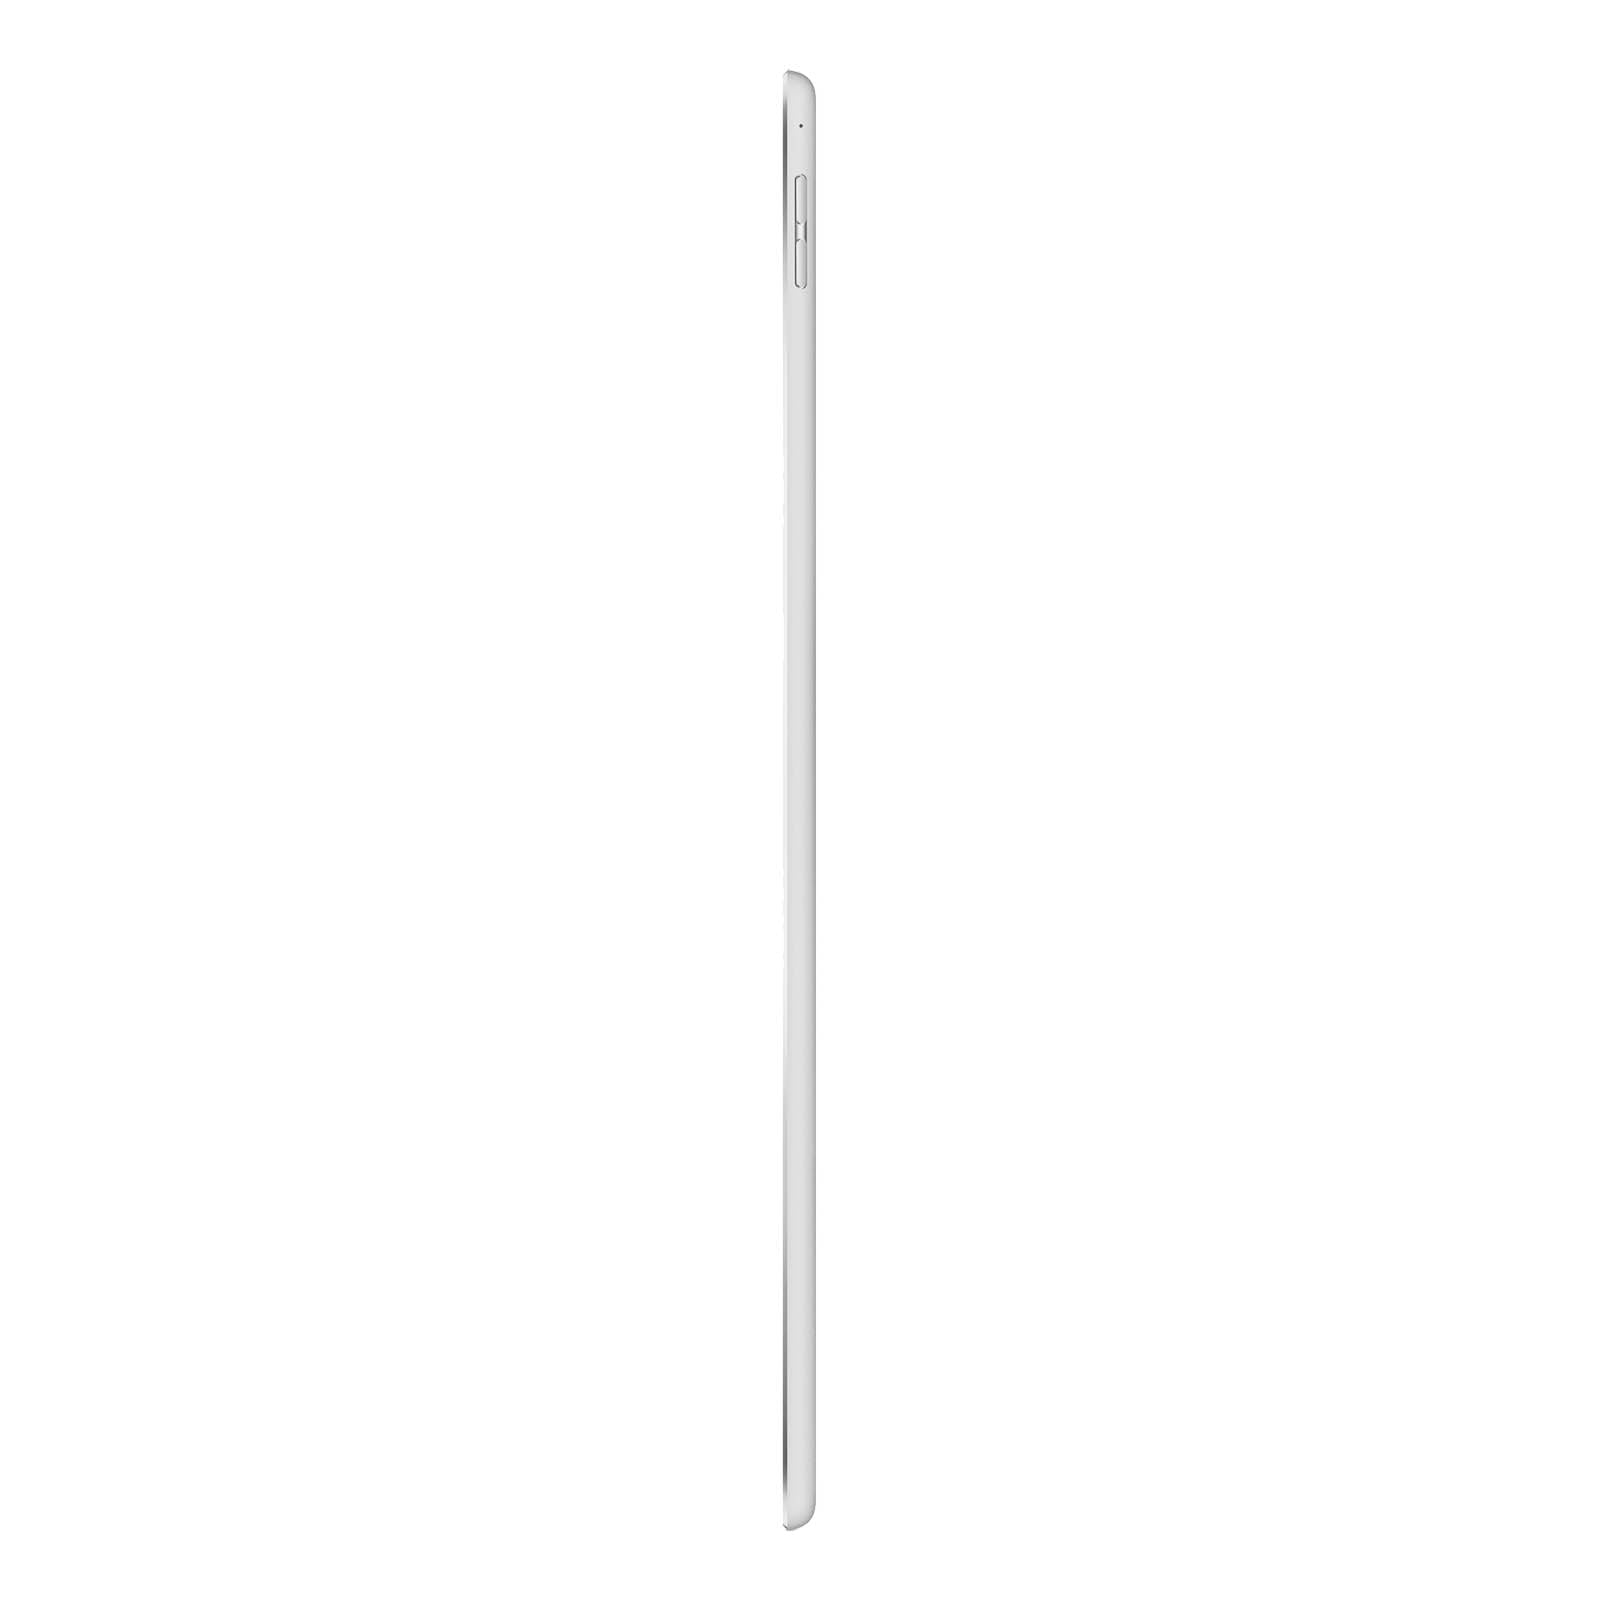 iPad Pro 12.9 Inch 2nd Gen 256GB WiFi Silber Sehr Gut WiFi